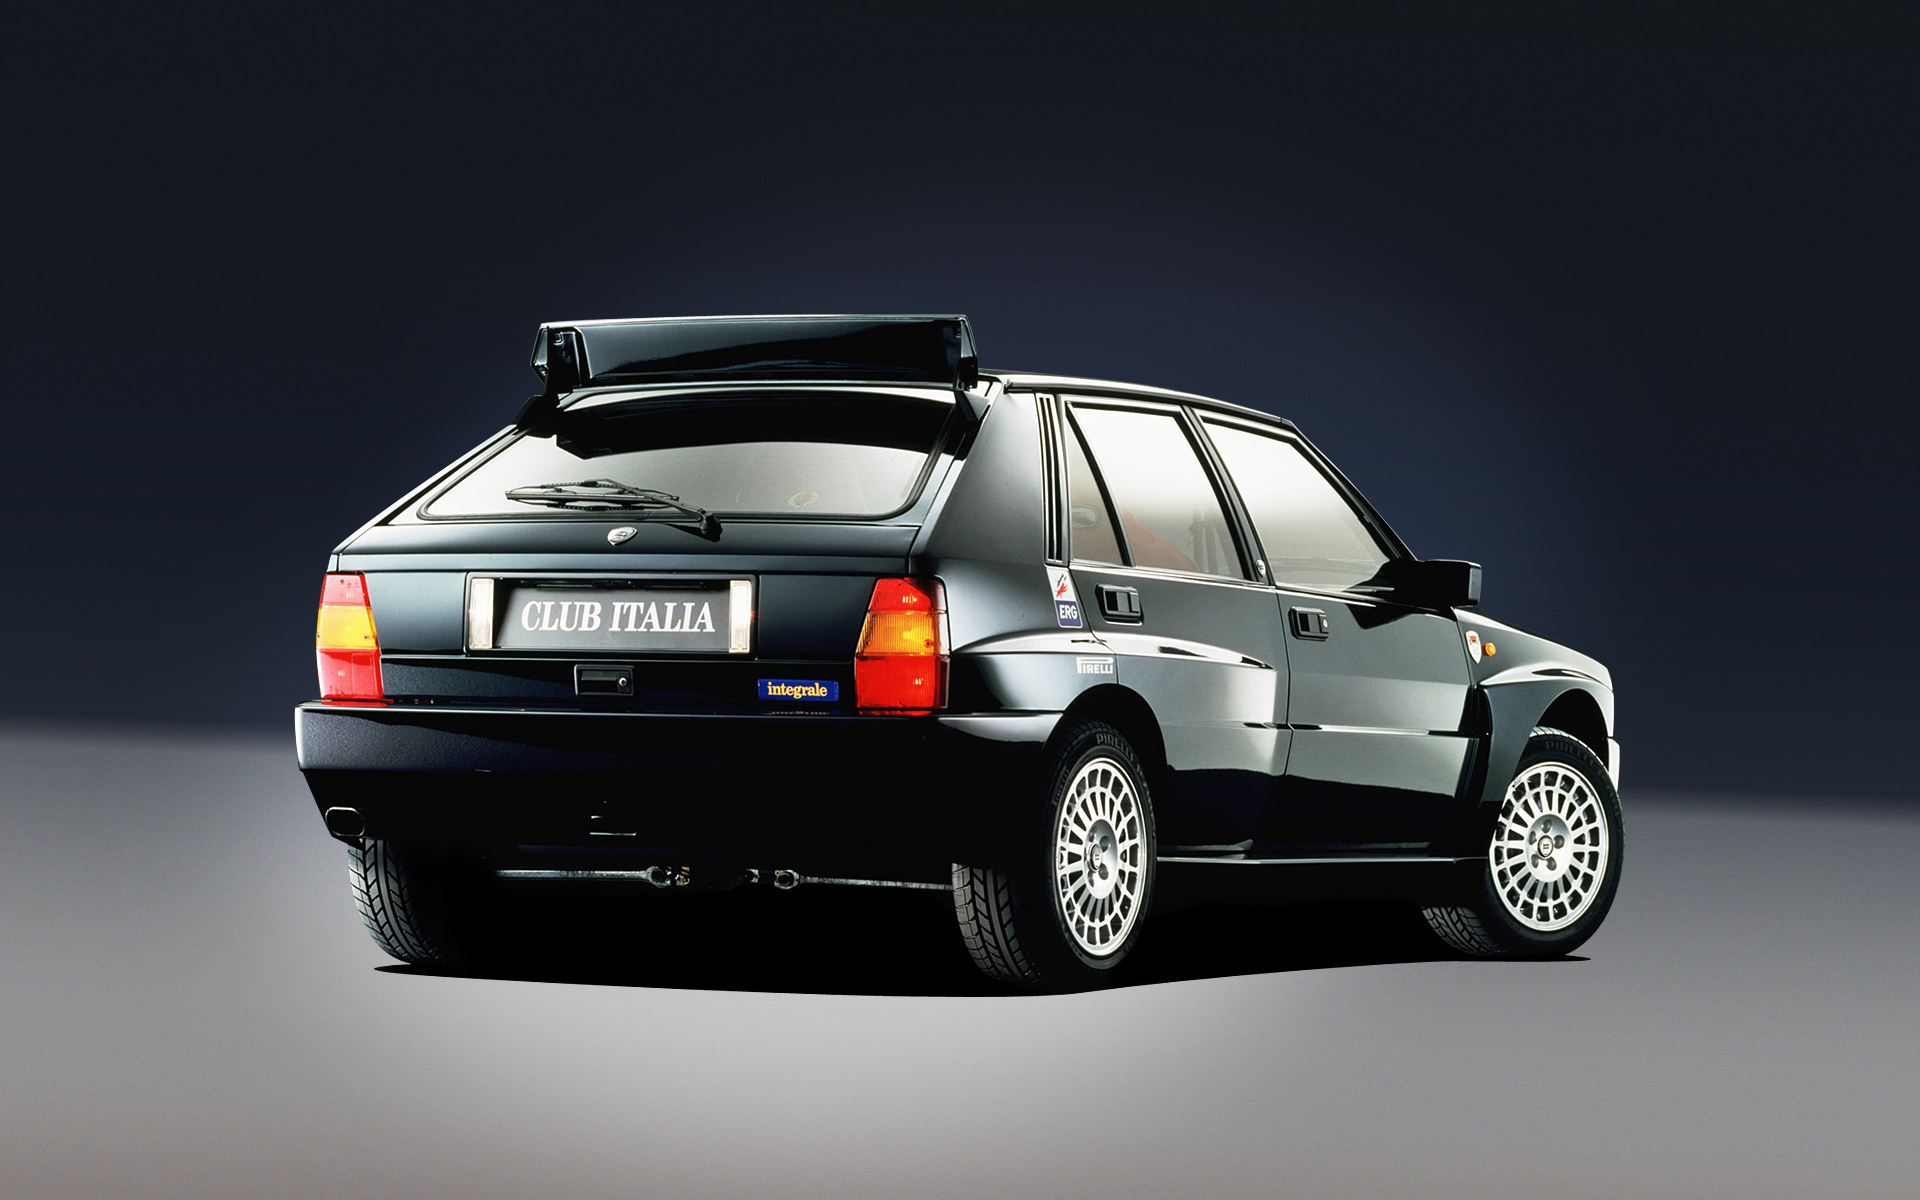  1992 Lancia Delta HF Integrale Evoluzione Wallpaper.